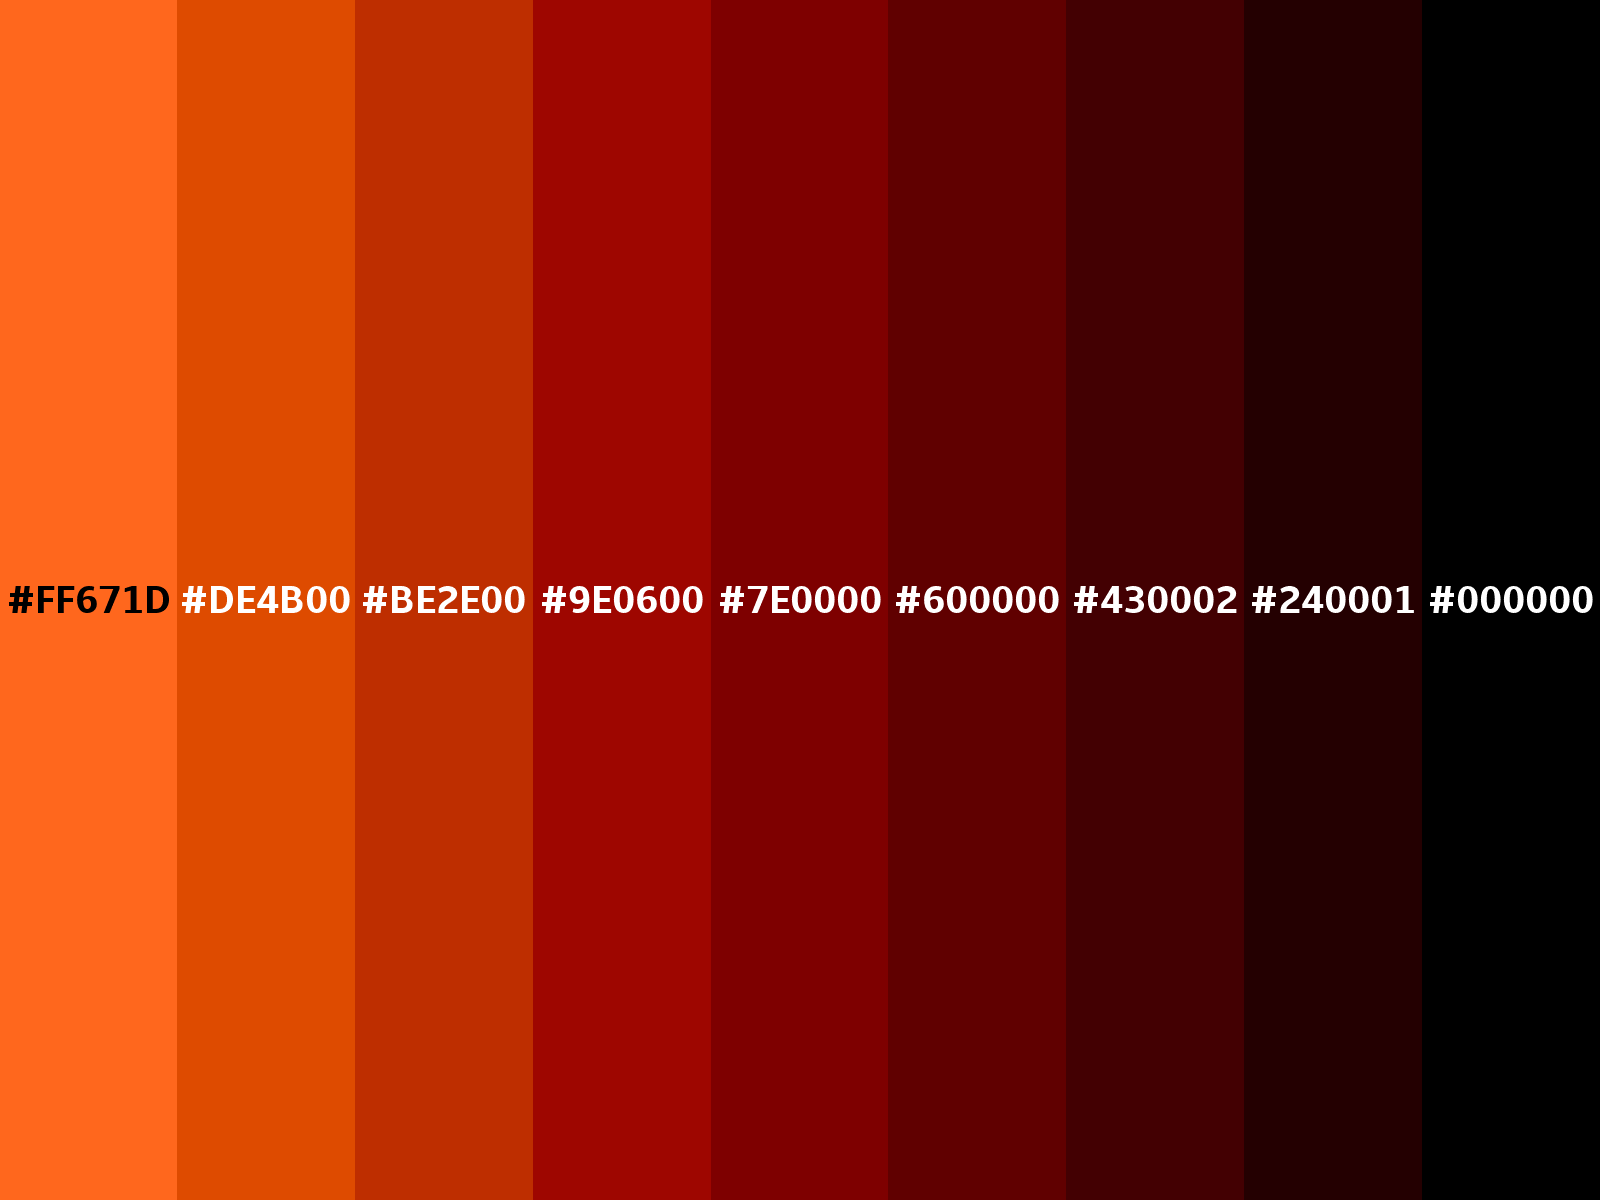 103B1D Hex Color, RGB: 16, 59, 29